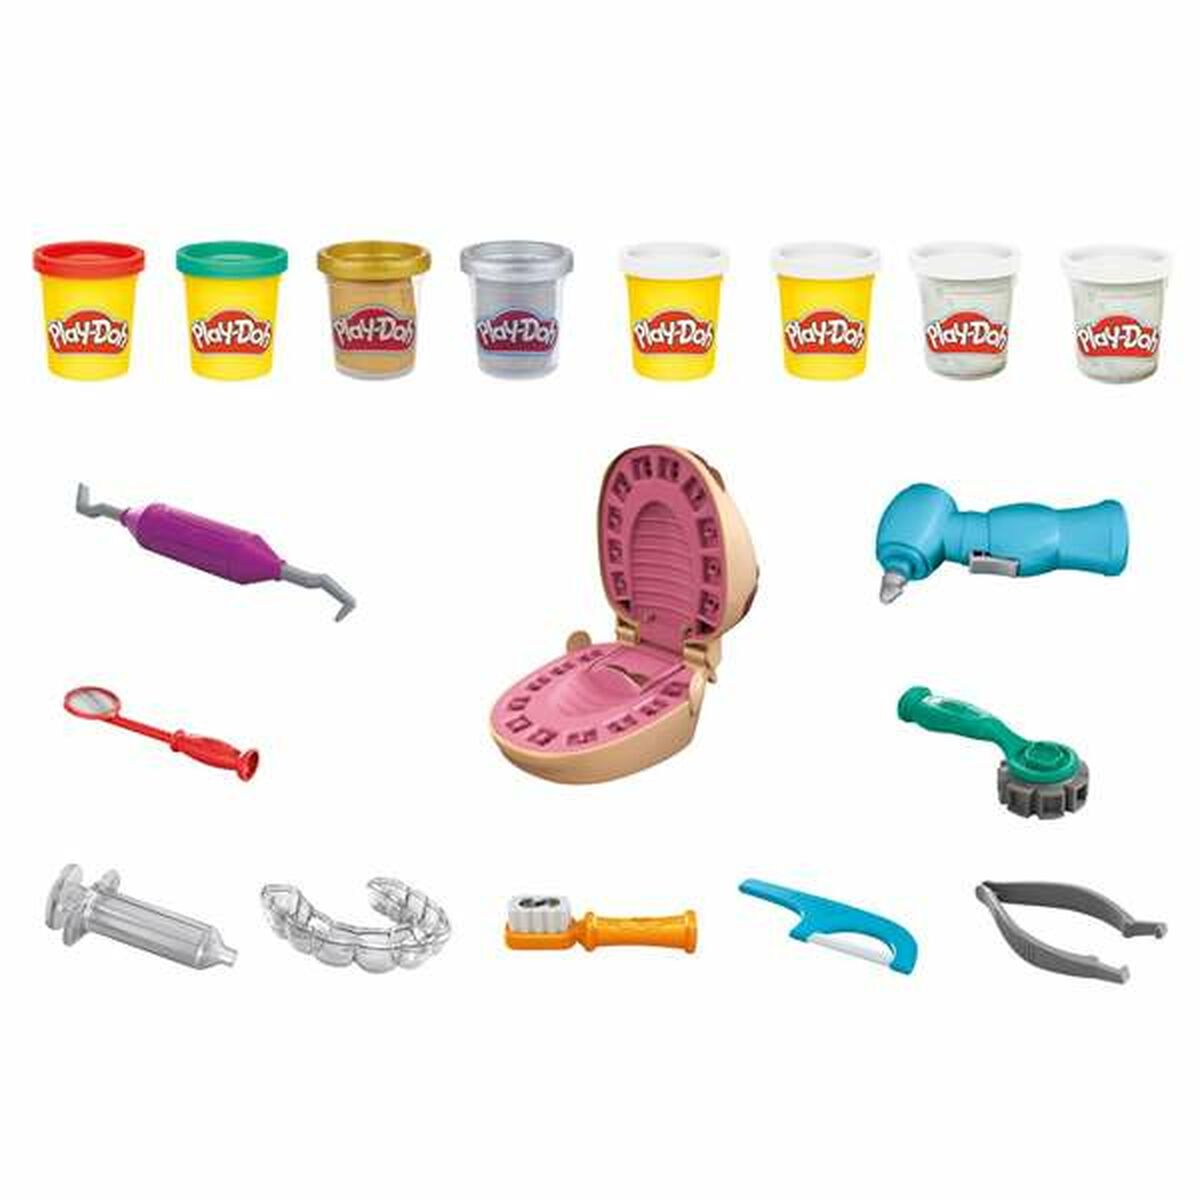 Modellera Spel Play-Doh F1259 8 botes Dentista-Leksaker och spel, Kreativa aktiviteter-Play-Doh-peaceofhome.se